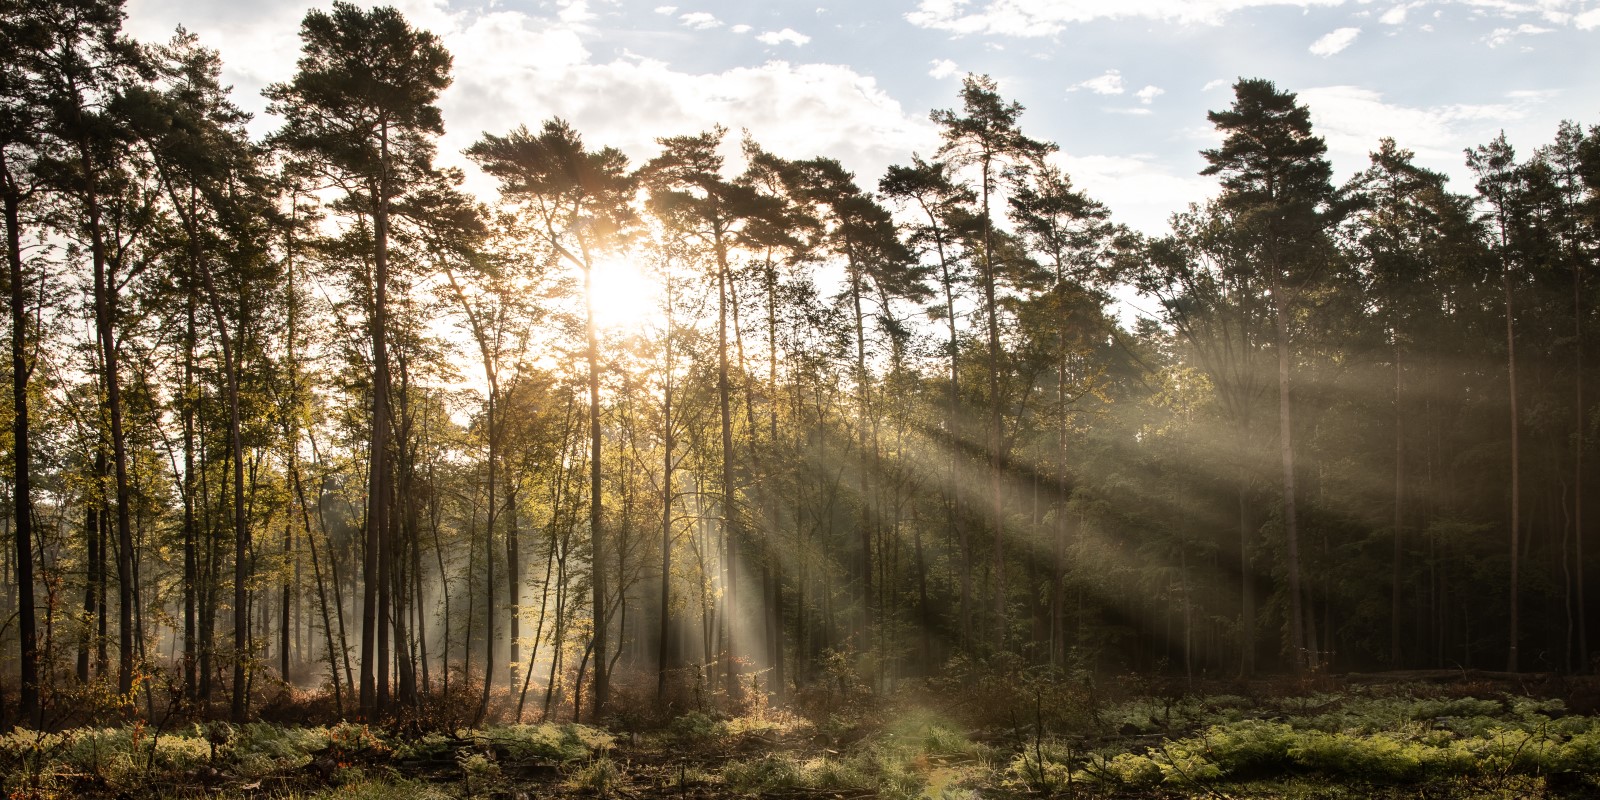 Zdjęcie przedstawia las o poranku ze wschodzącym słońcem.